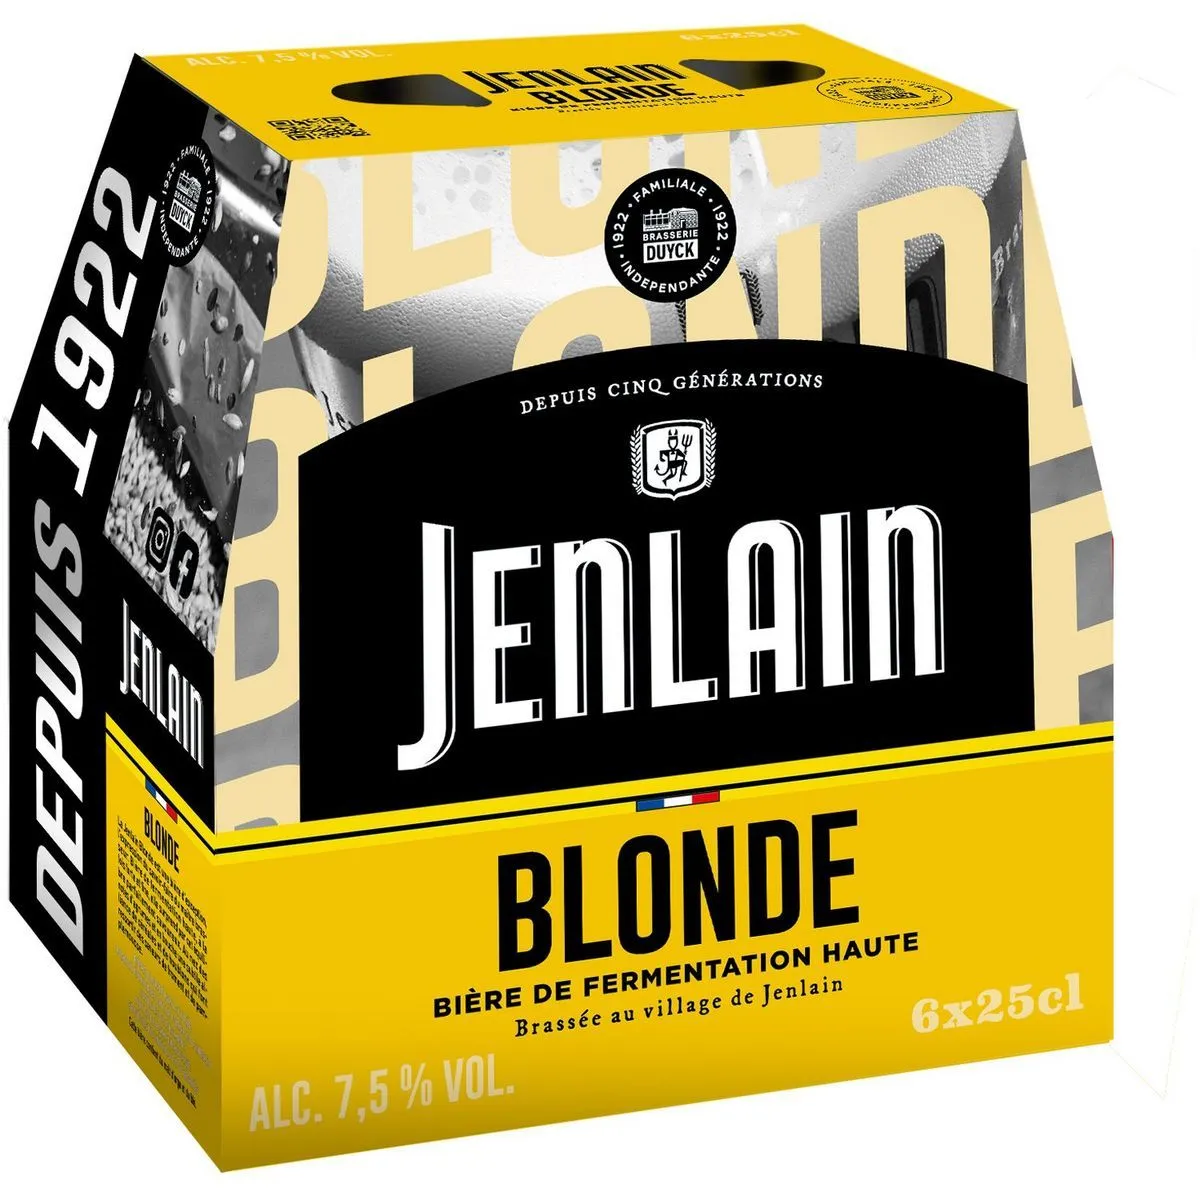 bière jenlain blonde*